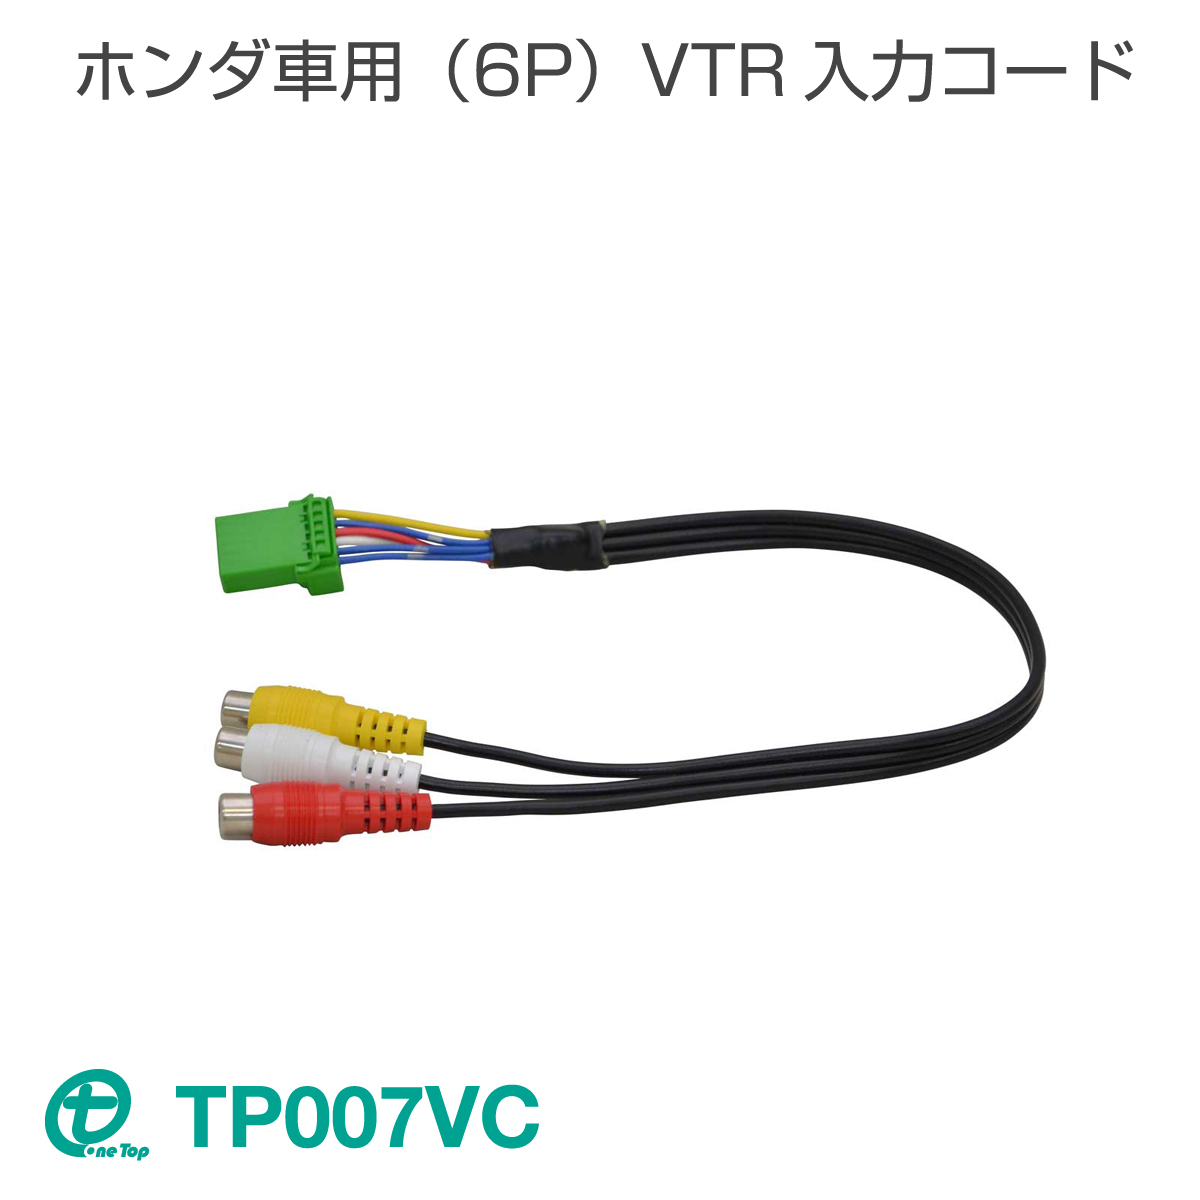 メーカーオプションナビ ディーラーオプションのナビに外部機器の映像 音声を入力できる 都内で ホンダ車用 最新作 6P VTR入力コード ワントップ OneTop TP007VC